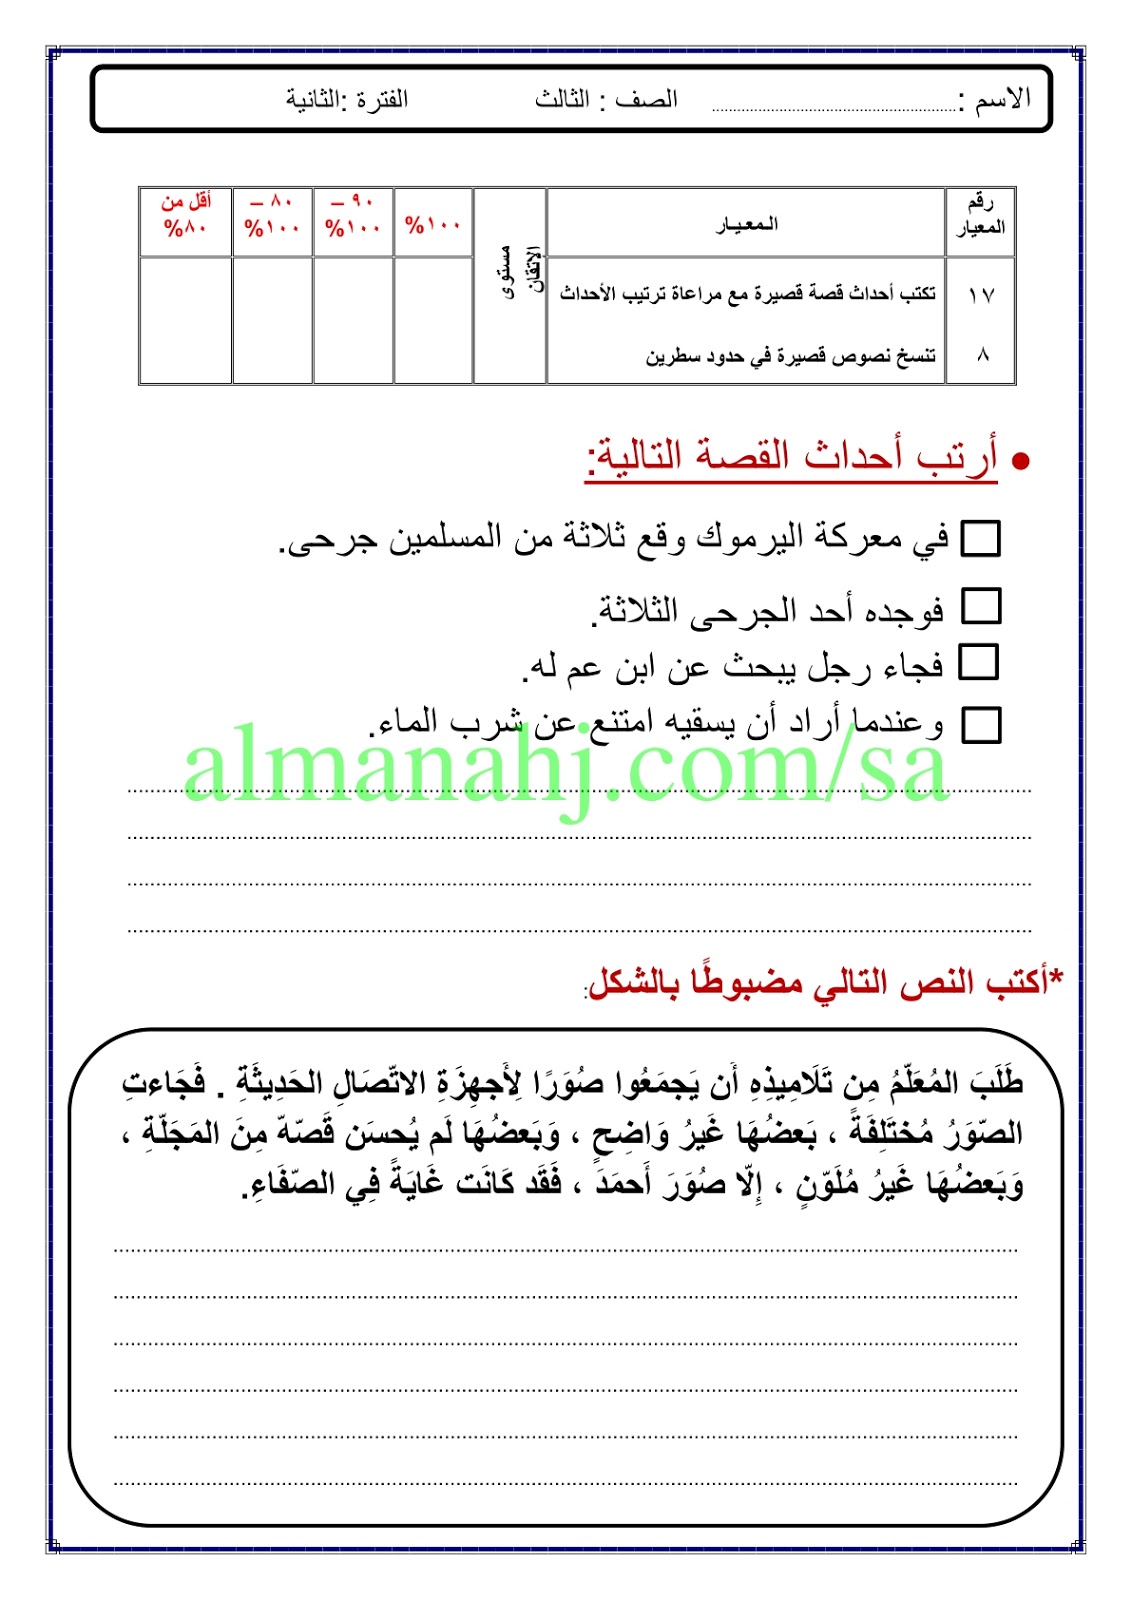 اختبار لغتي ثالث, الصف الثالث, لغة عربية, الفصل الثاني - المناهج السعودية